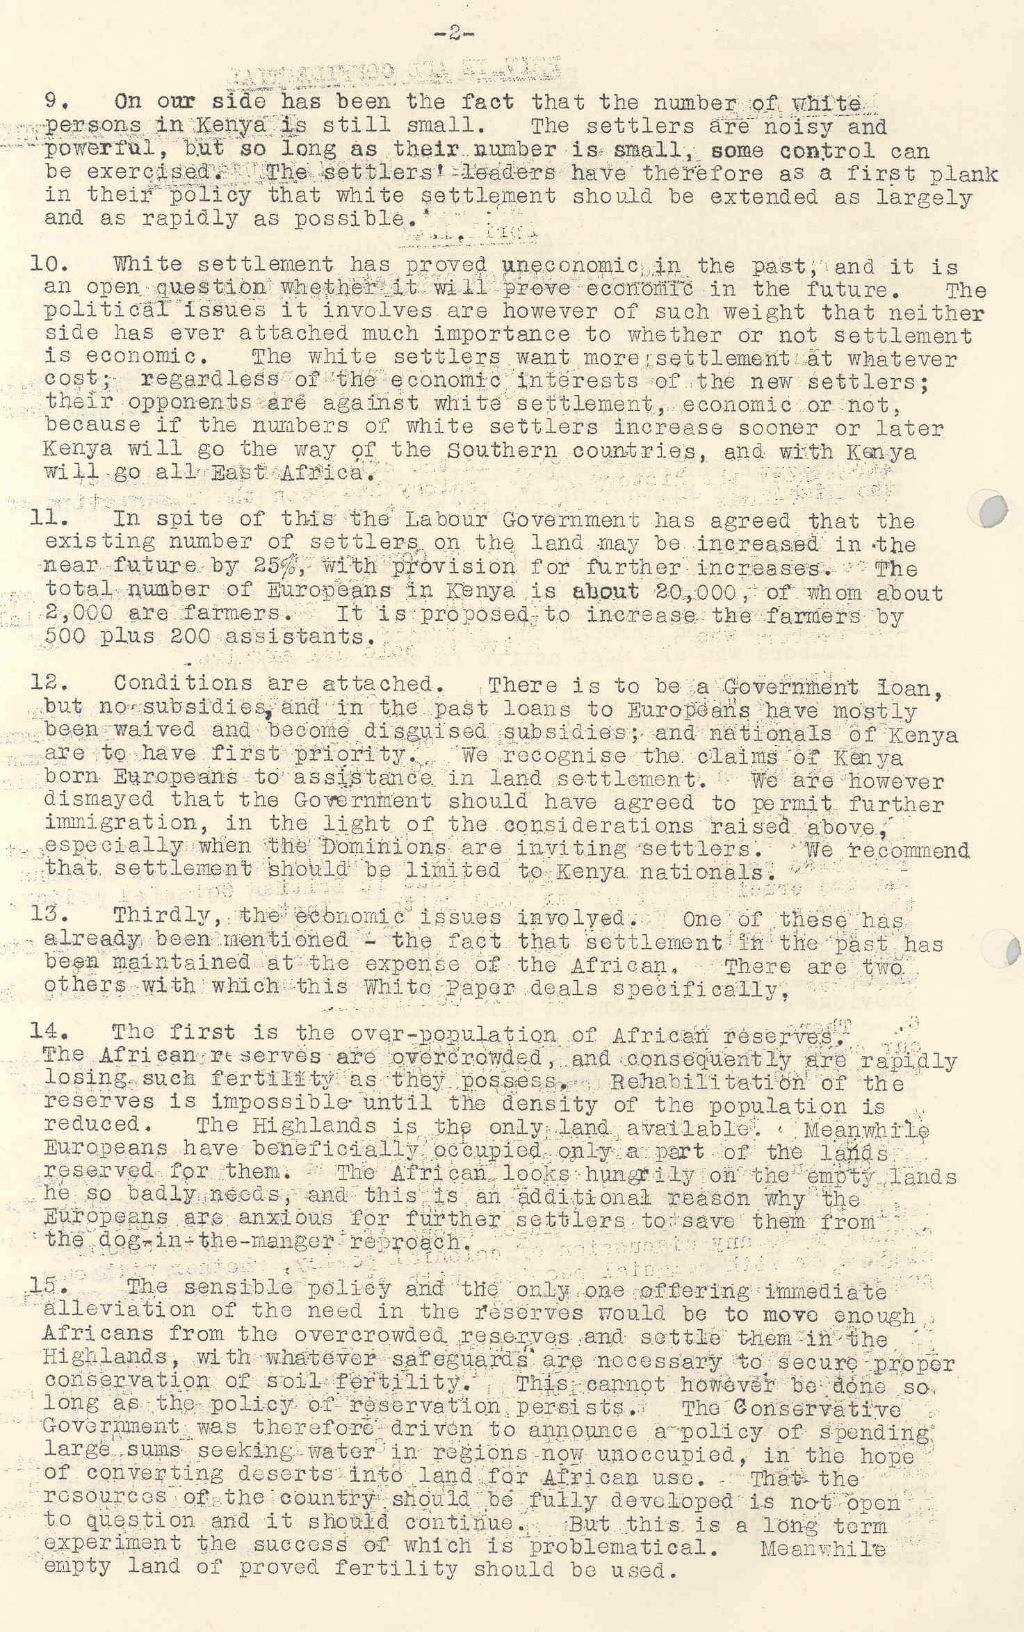 Memorandum on land utilisation and settlement in Kenya, 1946